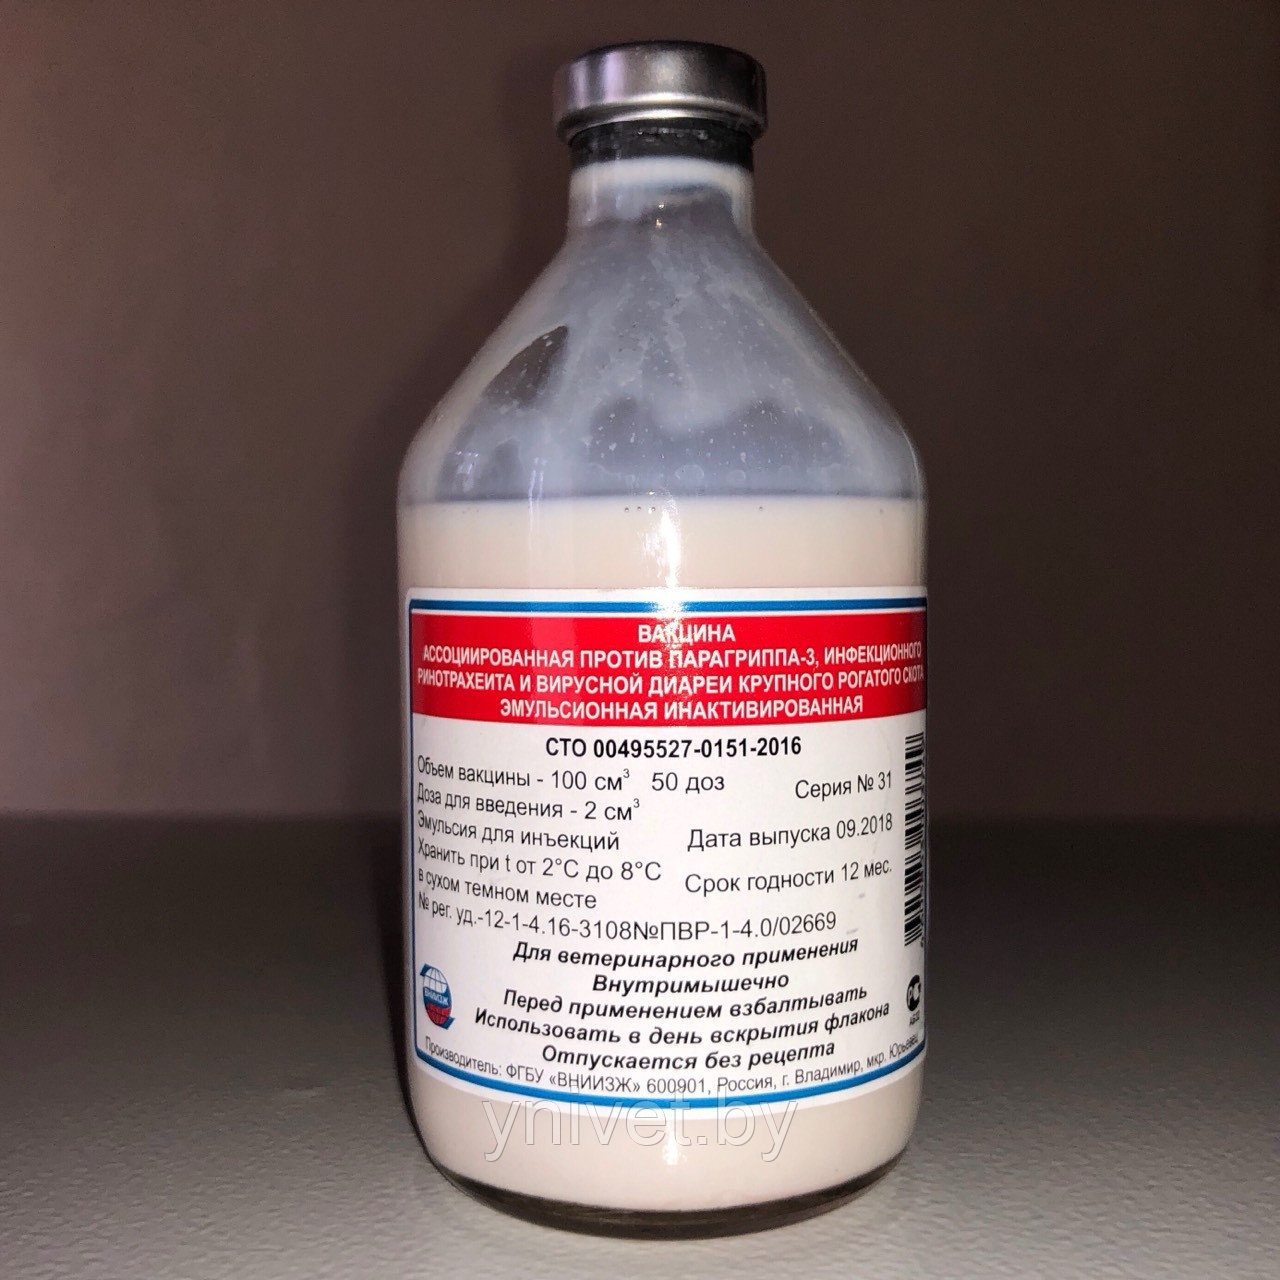 Акаривак: инструкция по применению и разведению вакцины против спирохетоза птиц